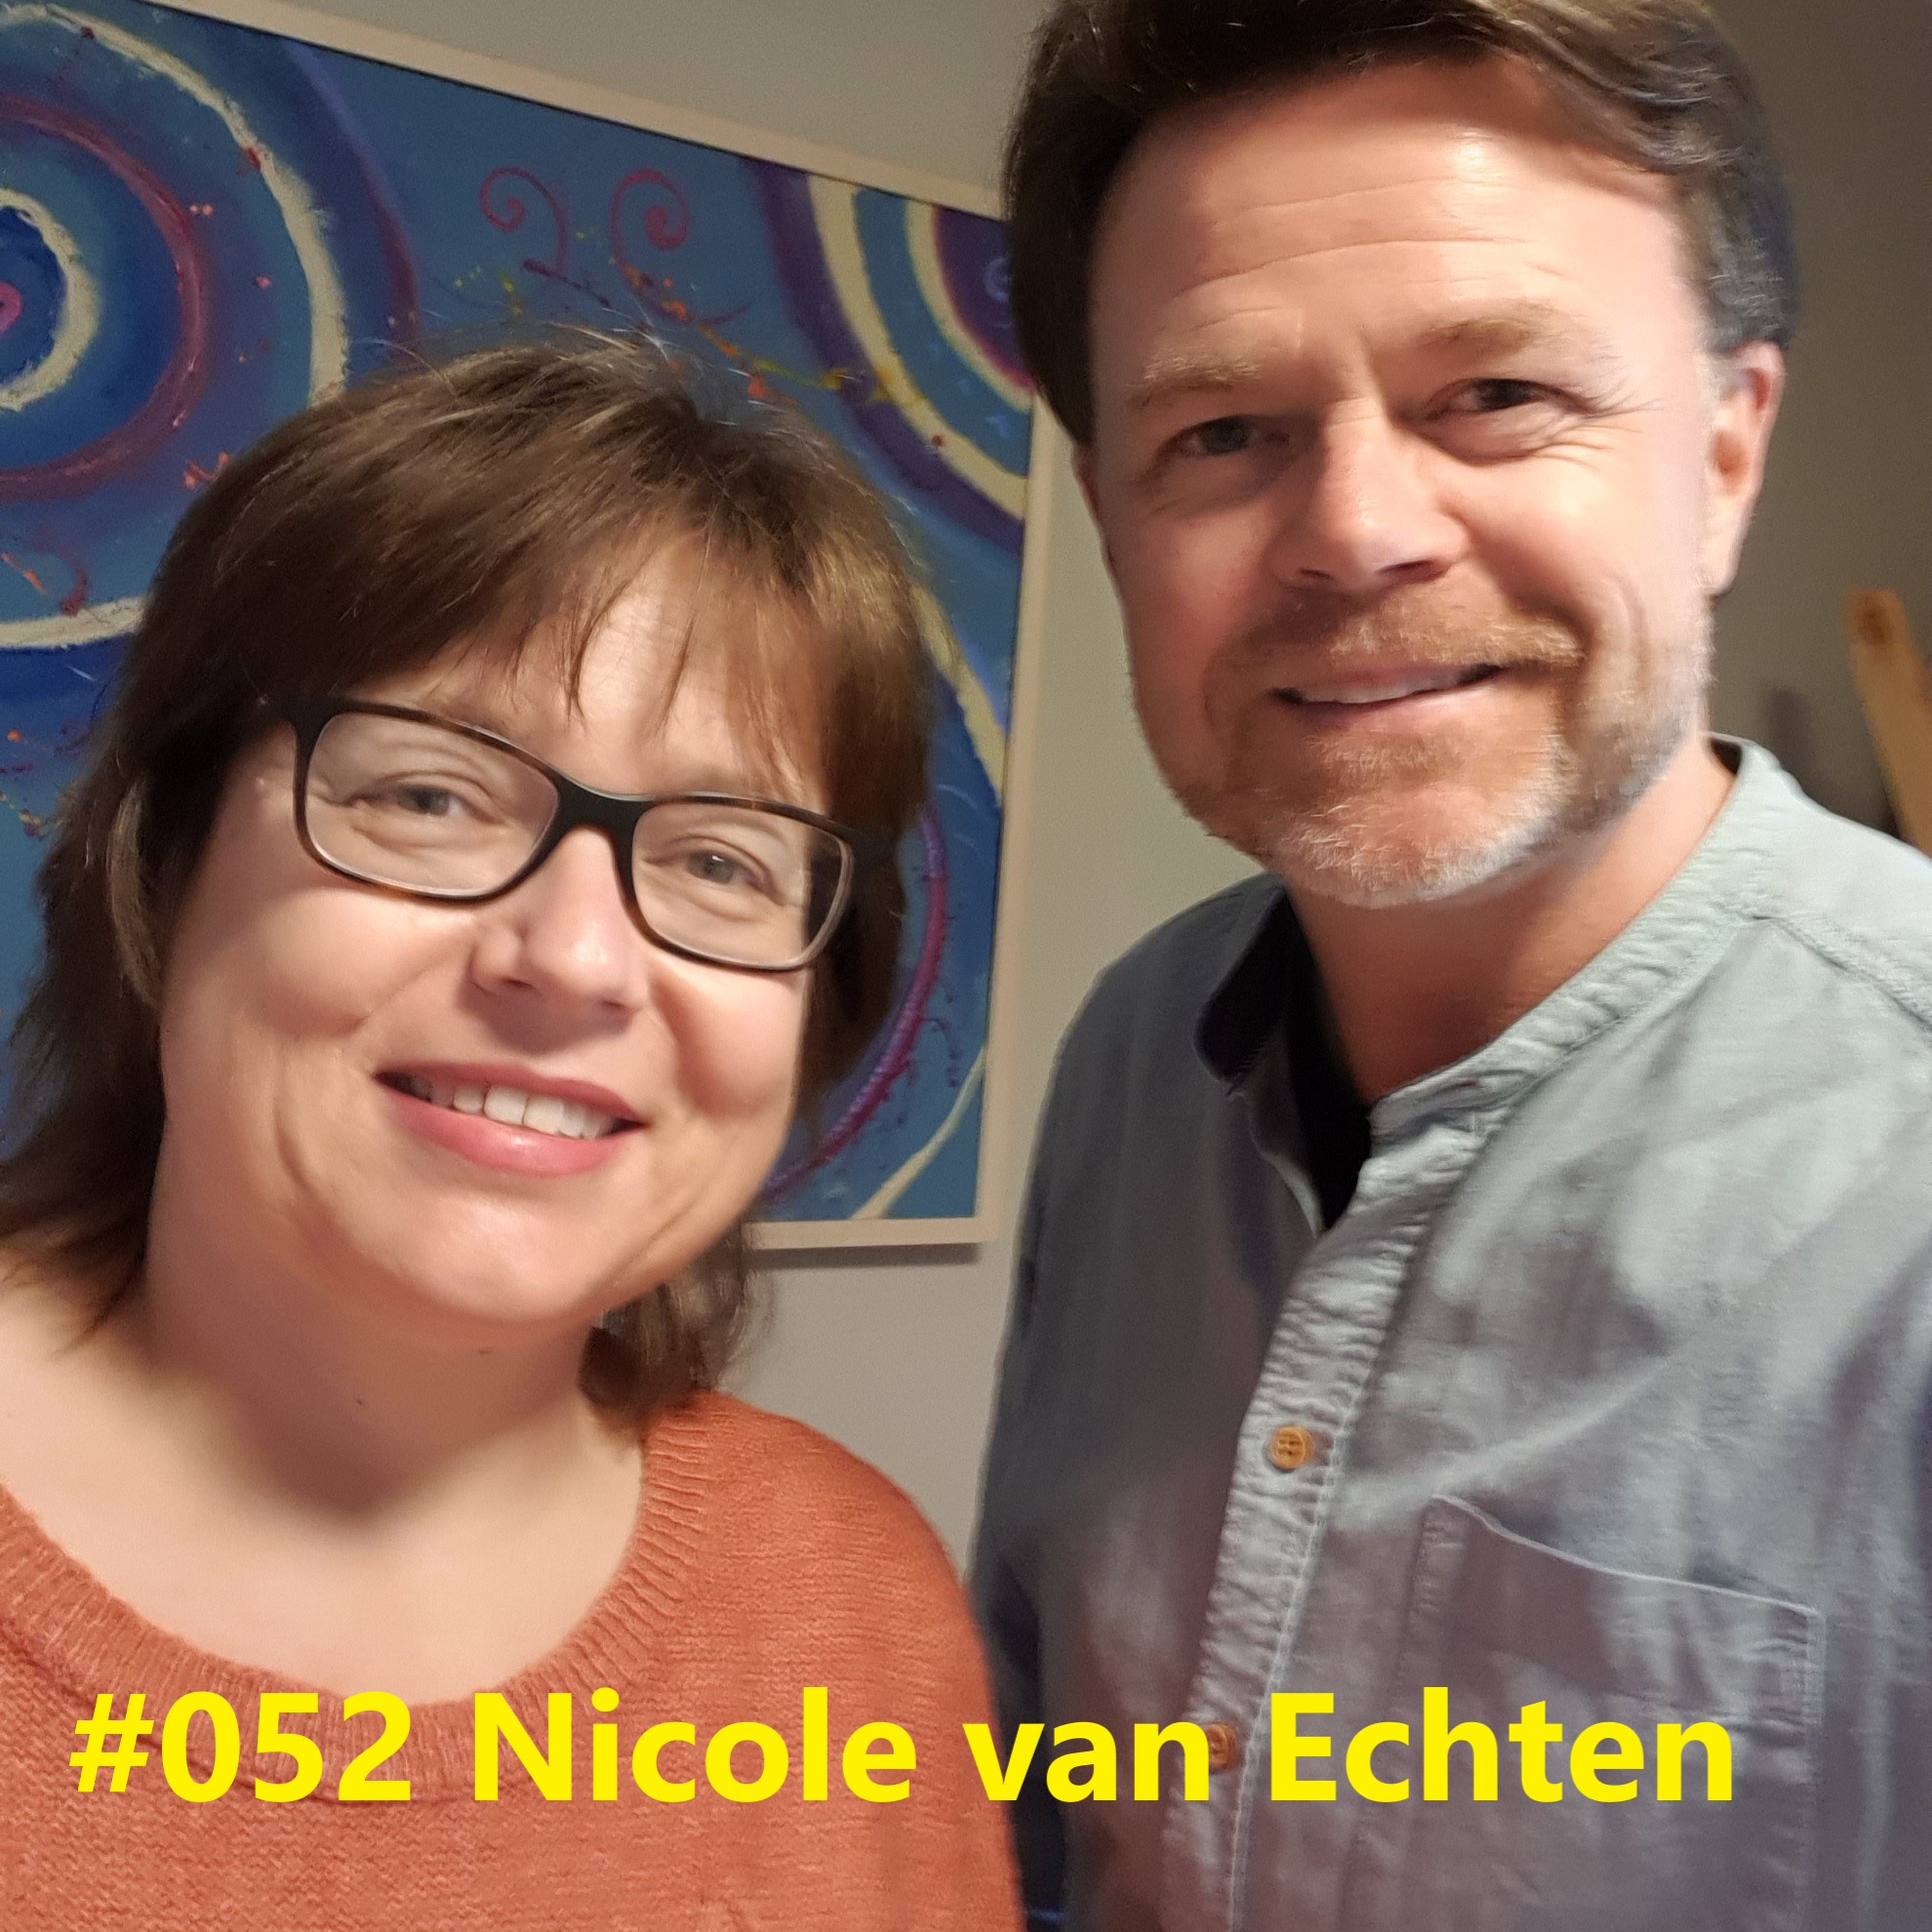 Nicole van Echten